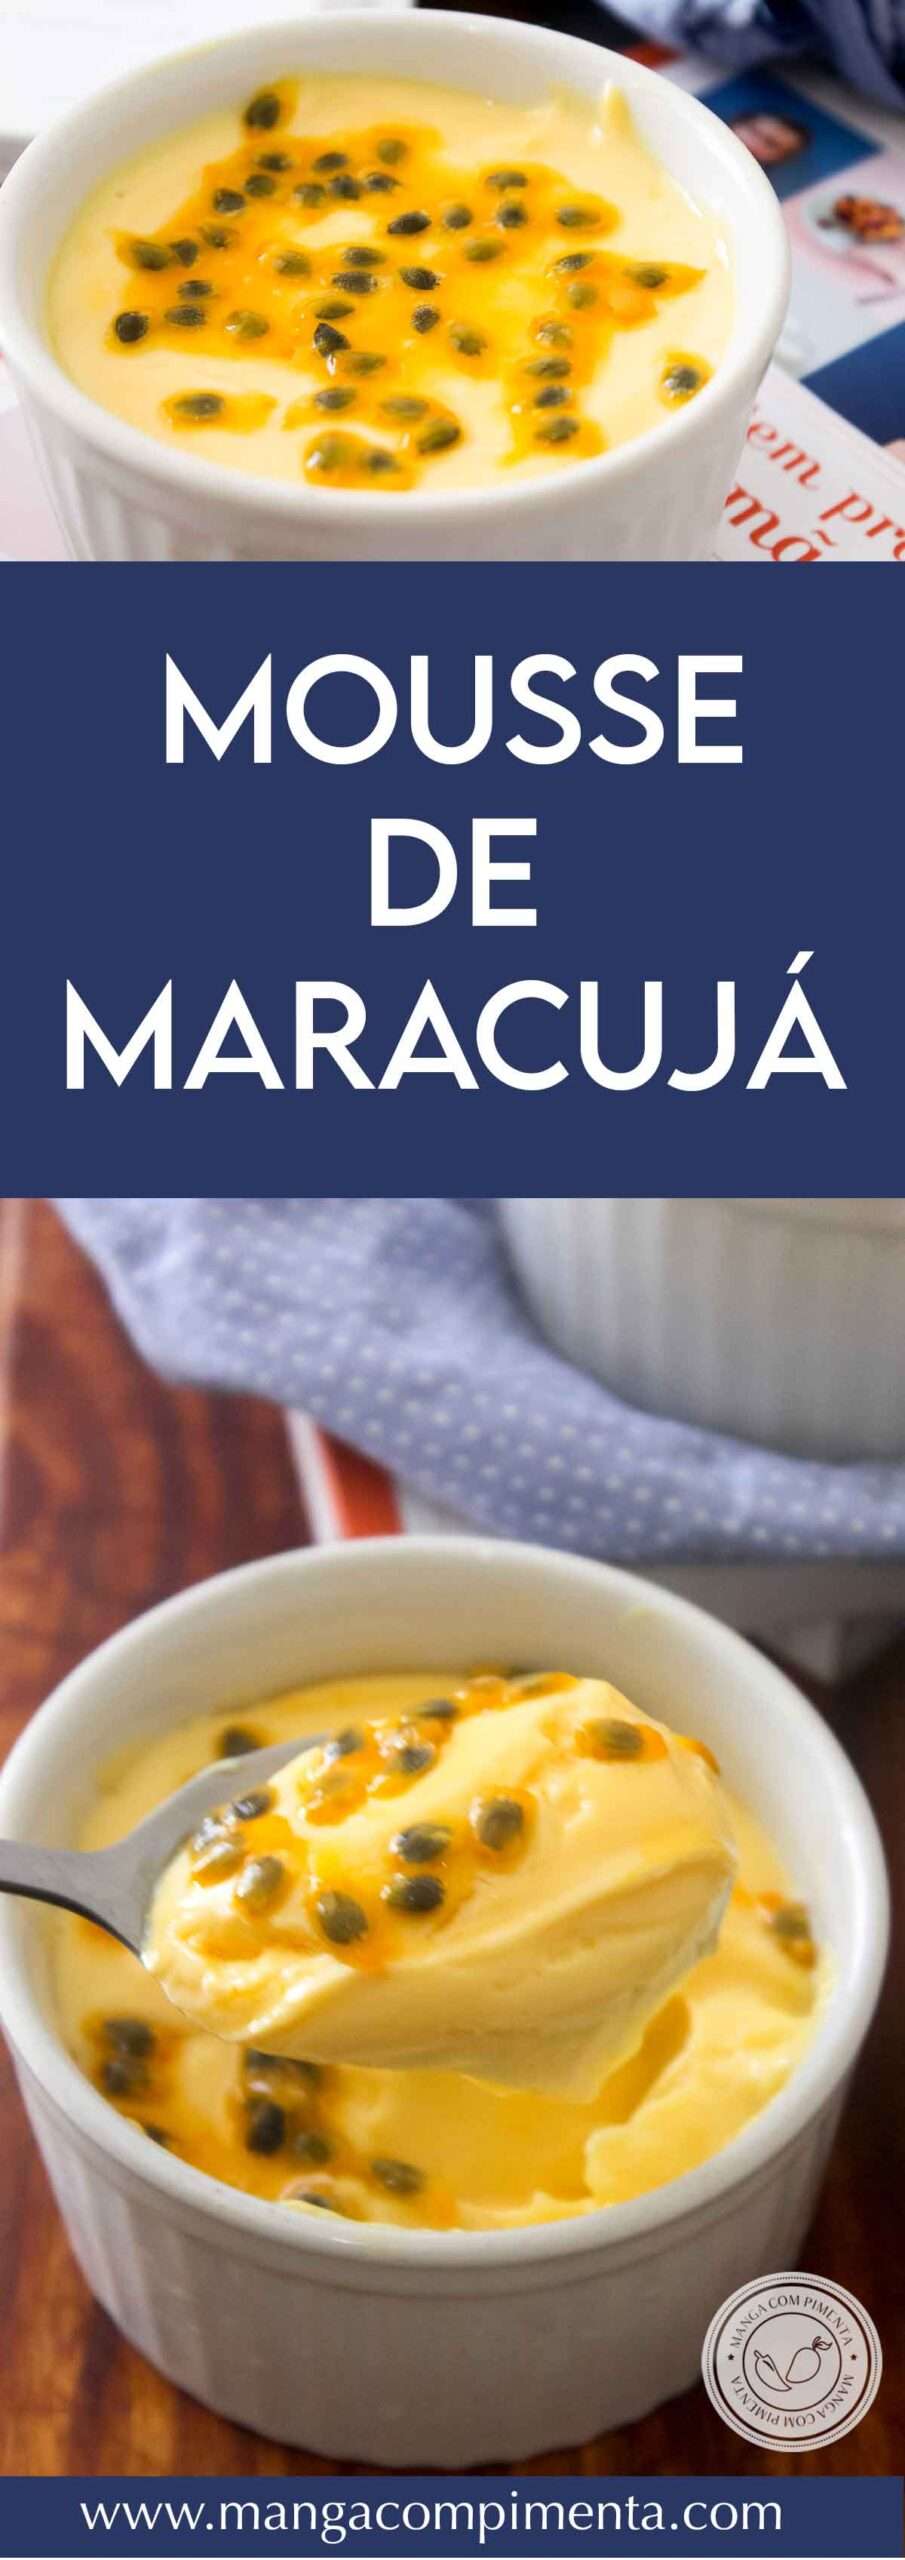 Receita de Mousse de Maracujá - um doce que pode ser servido em qualquer ocasião ou comemoração.